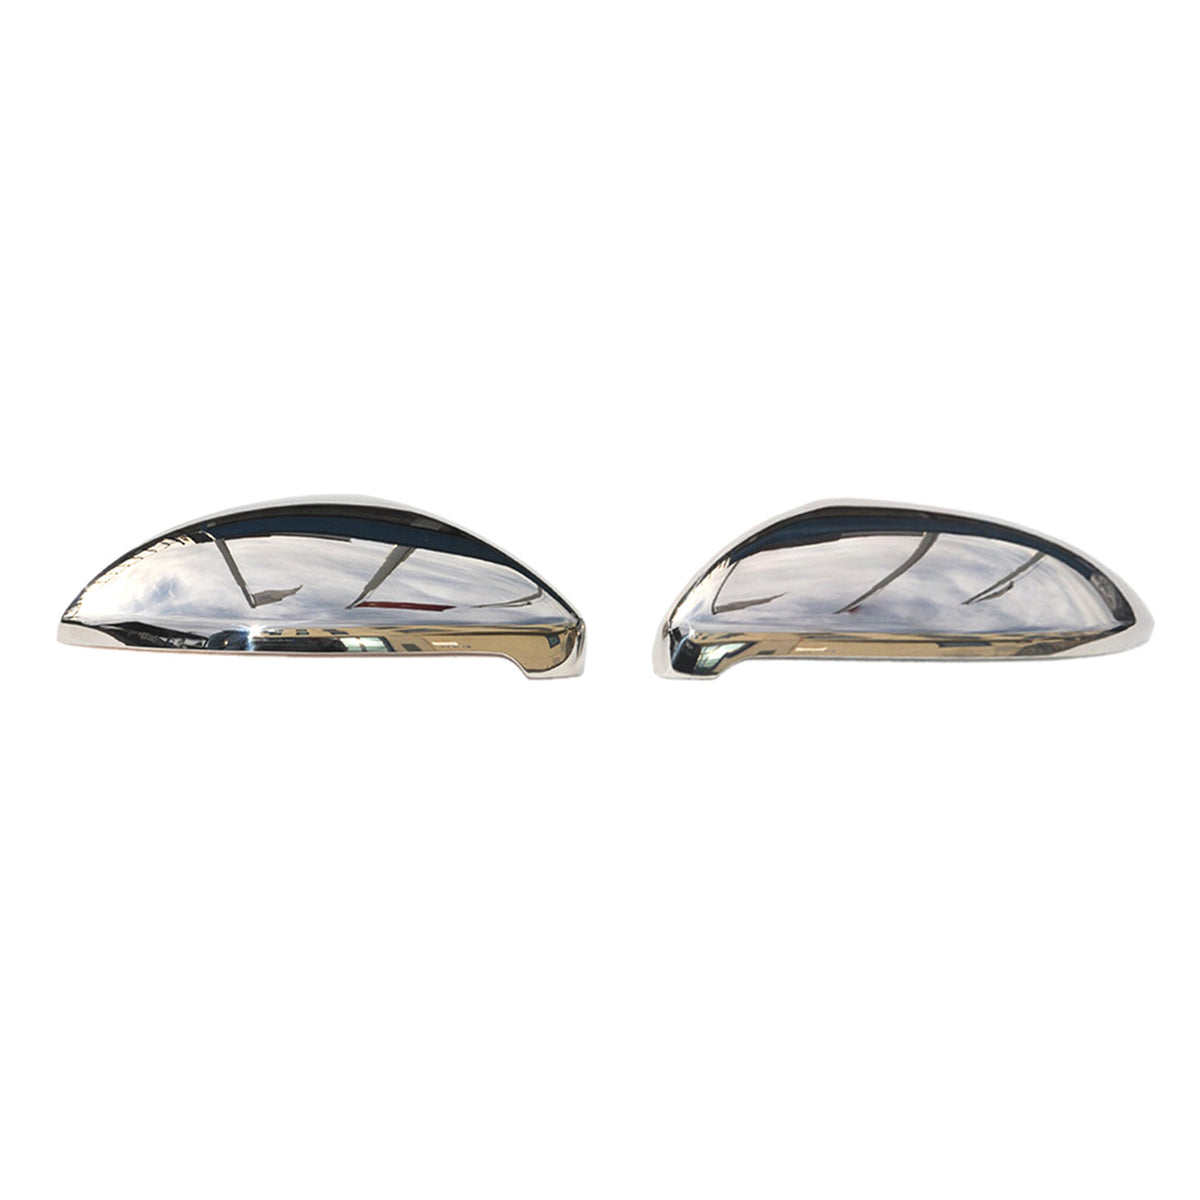 Spiegelkappen Spiegelabdeckung für VW Golf Sportsvan 2014-2019 Edelstahl Silber